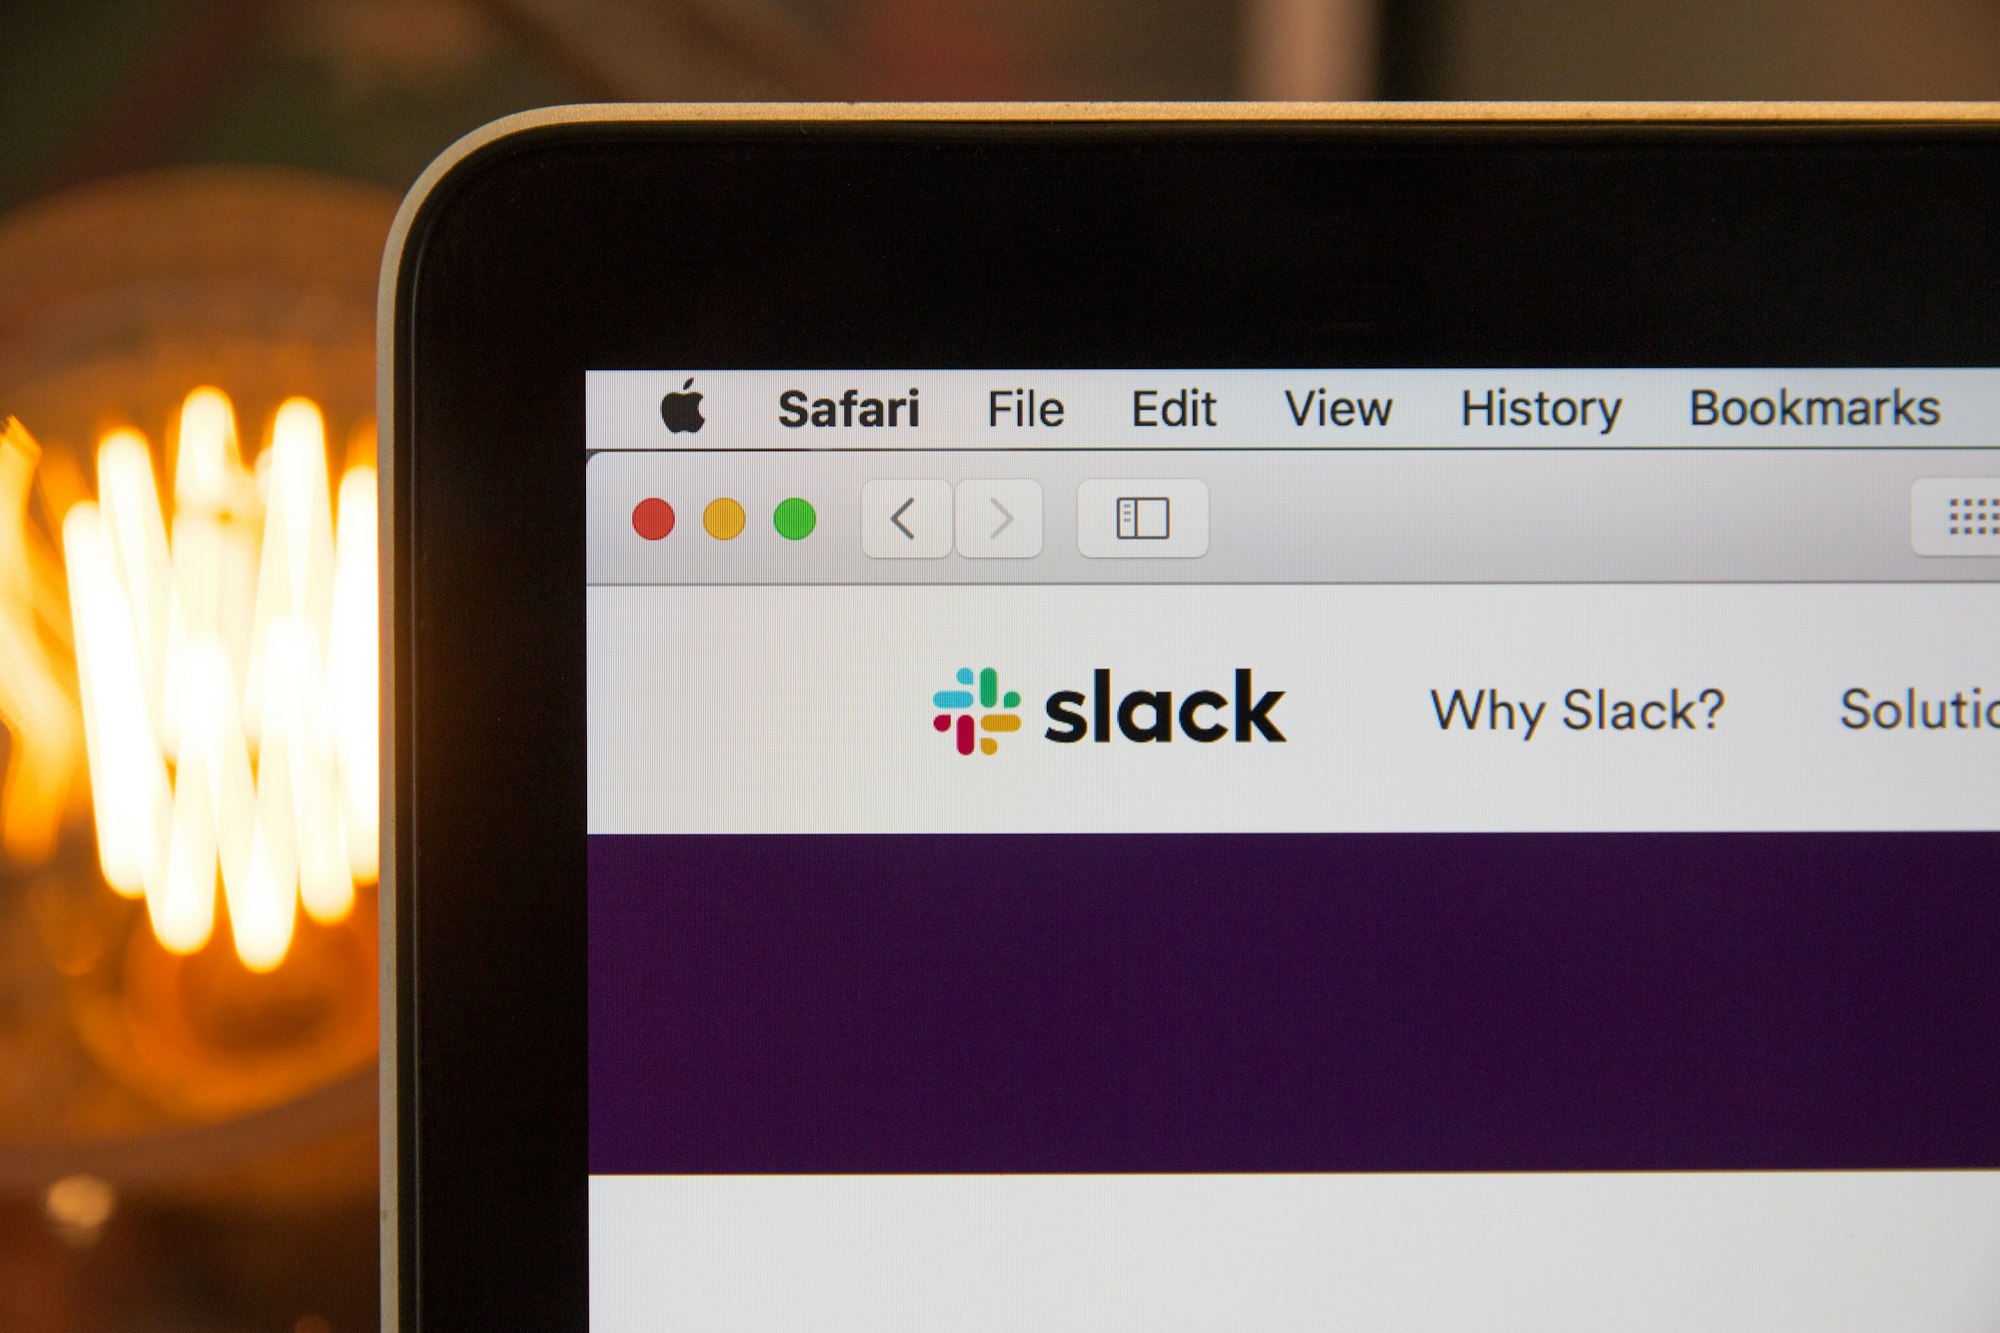 Slack used on Safari